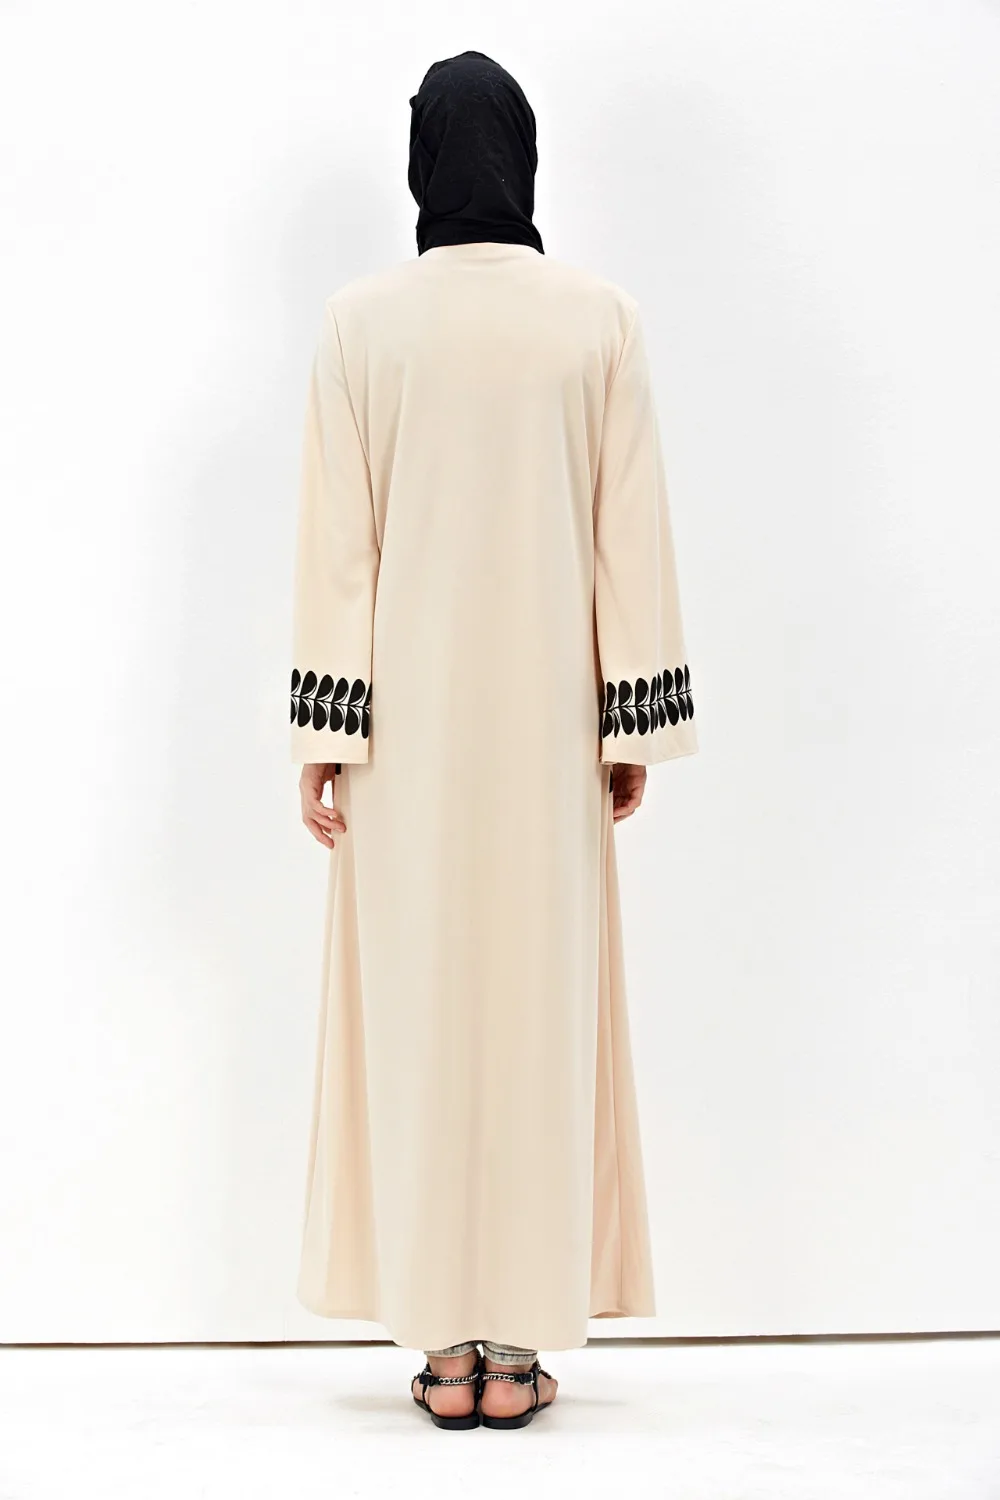 Uninice/длинные с цветочным принтом кардиган abayas для Для женщин исламистского Костюмы Свободные повседневные Модные djellaba халат мусульмане